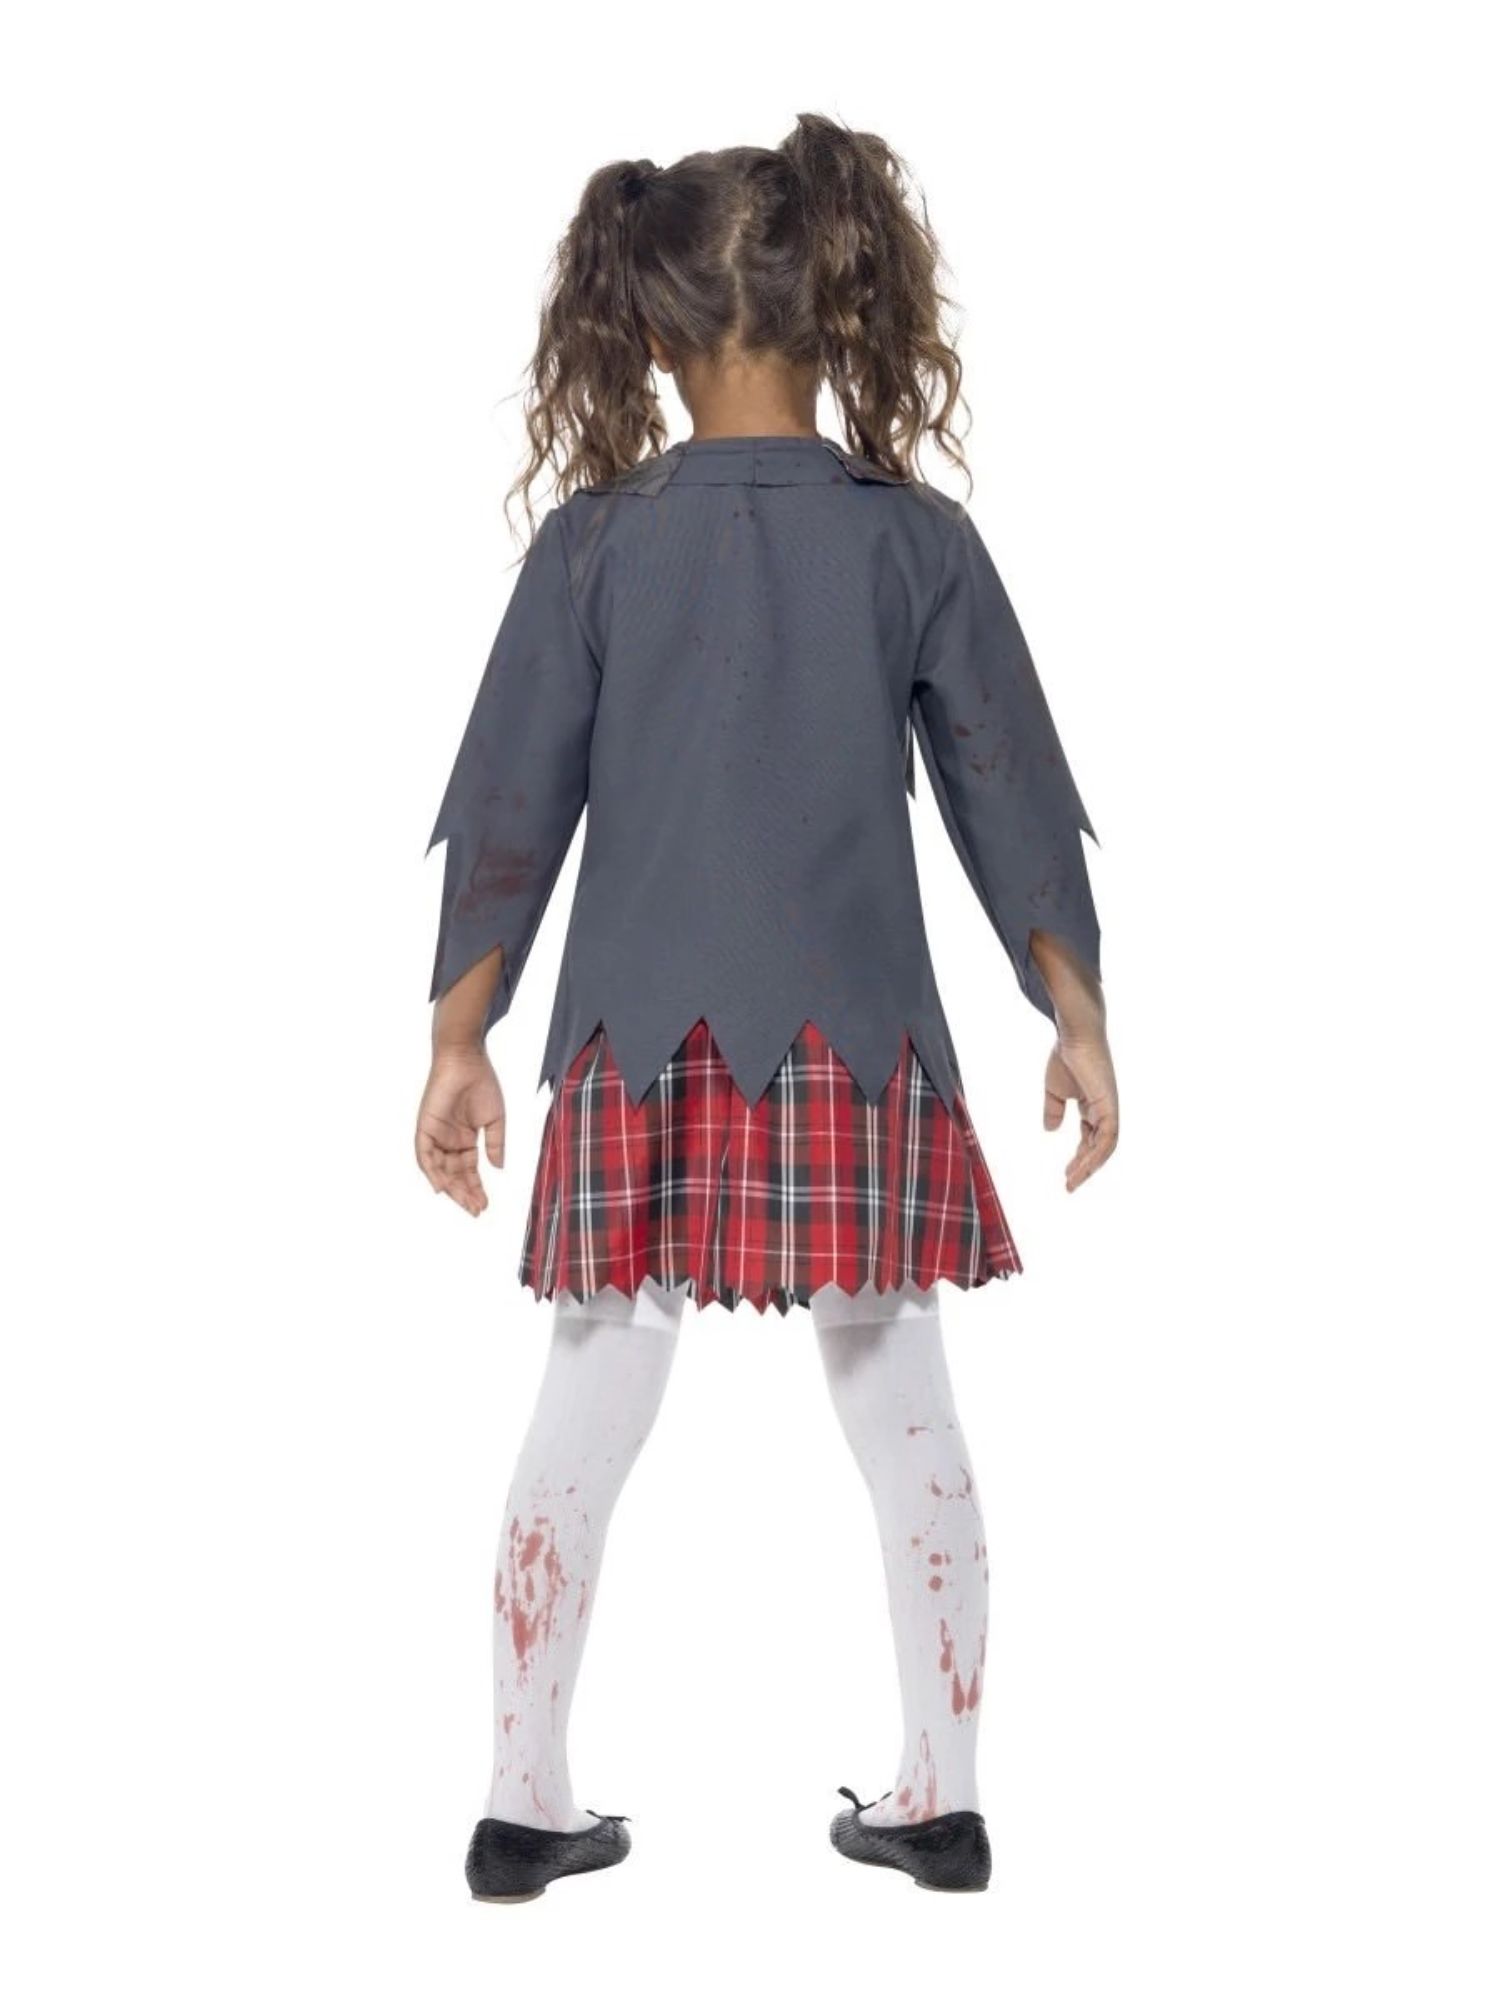 Smiffys 49" White and Red Zombie School Girl Child Halloween Costume - Medium